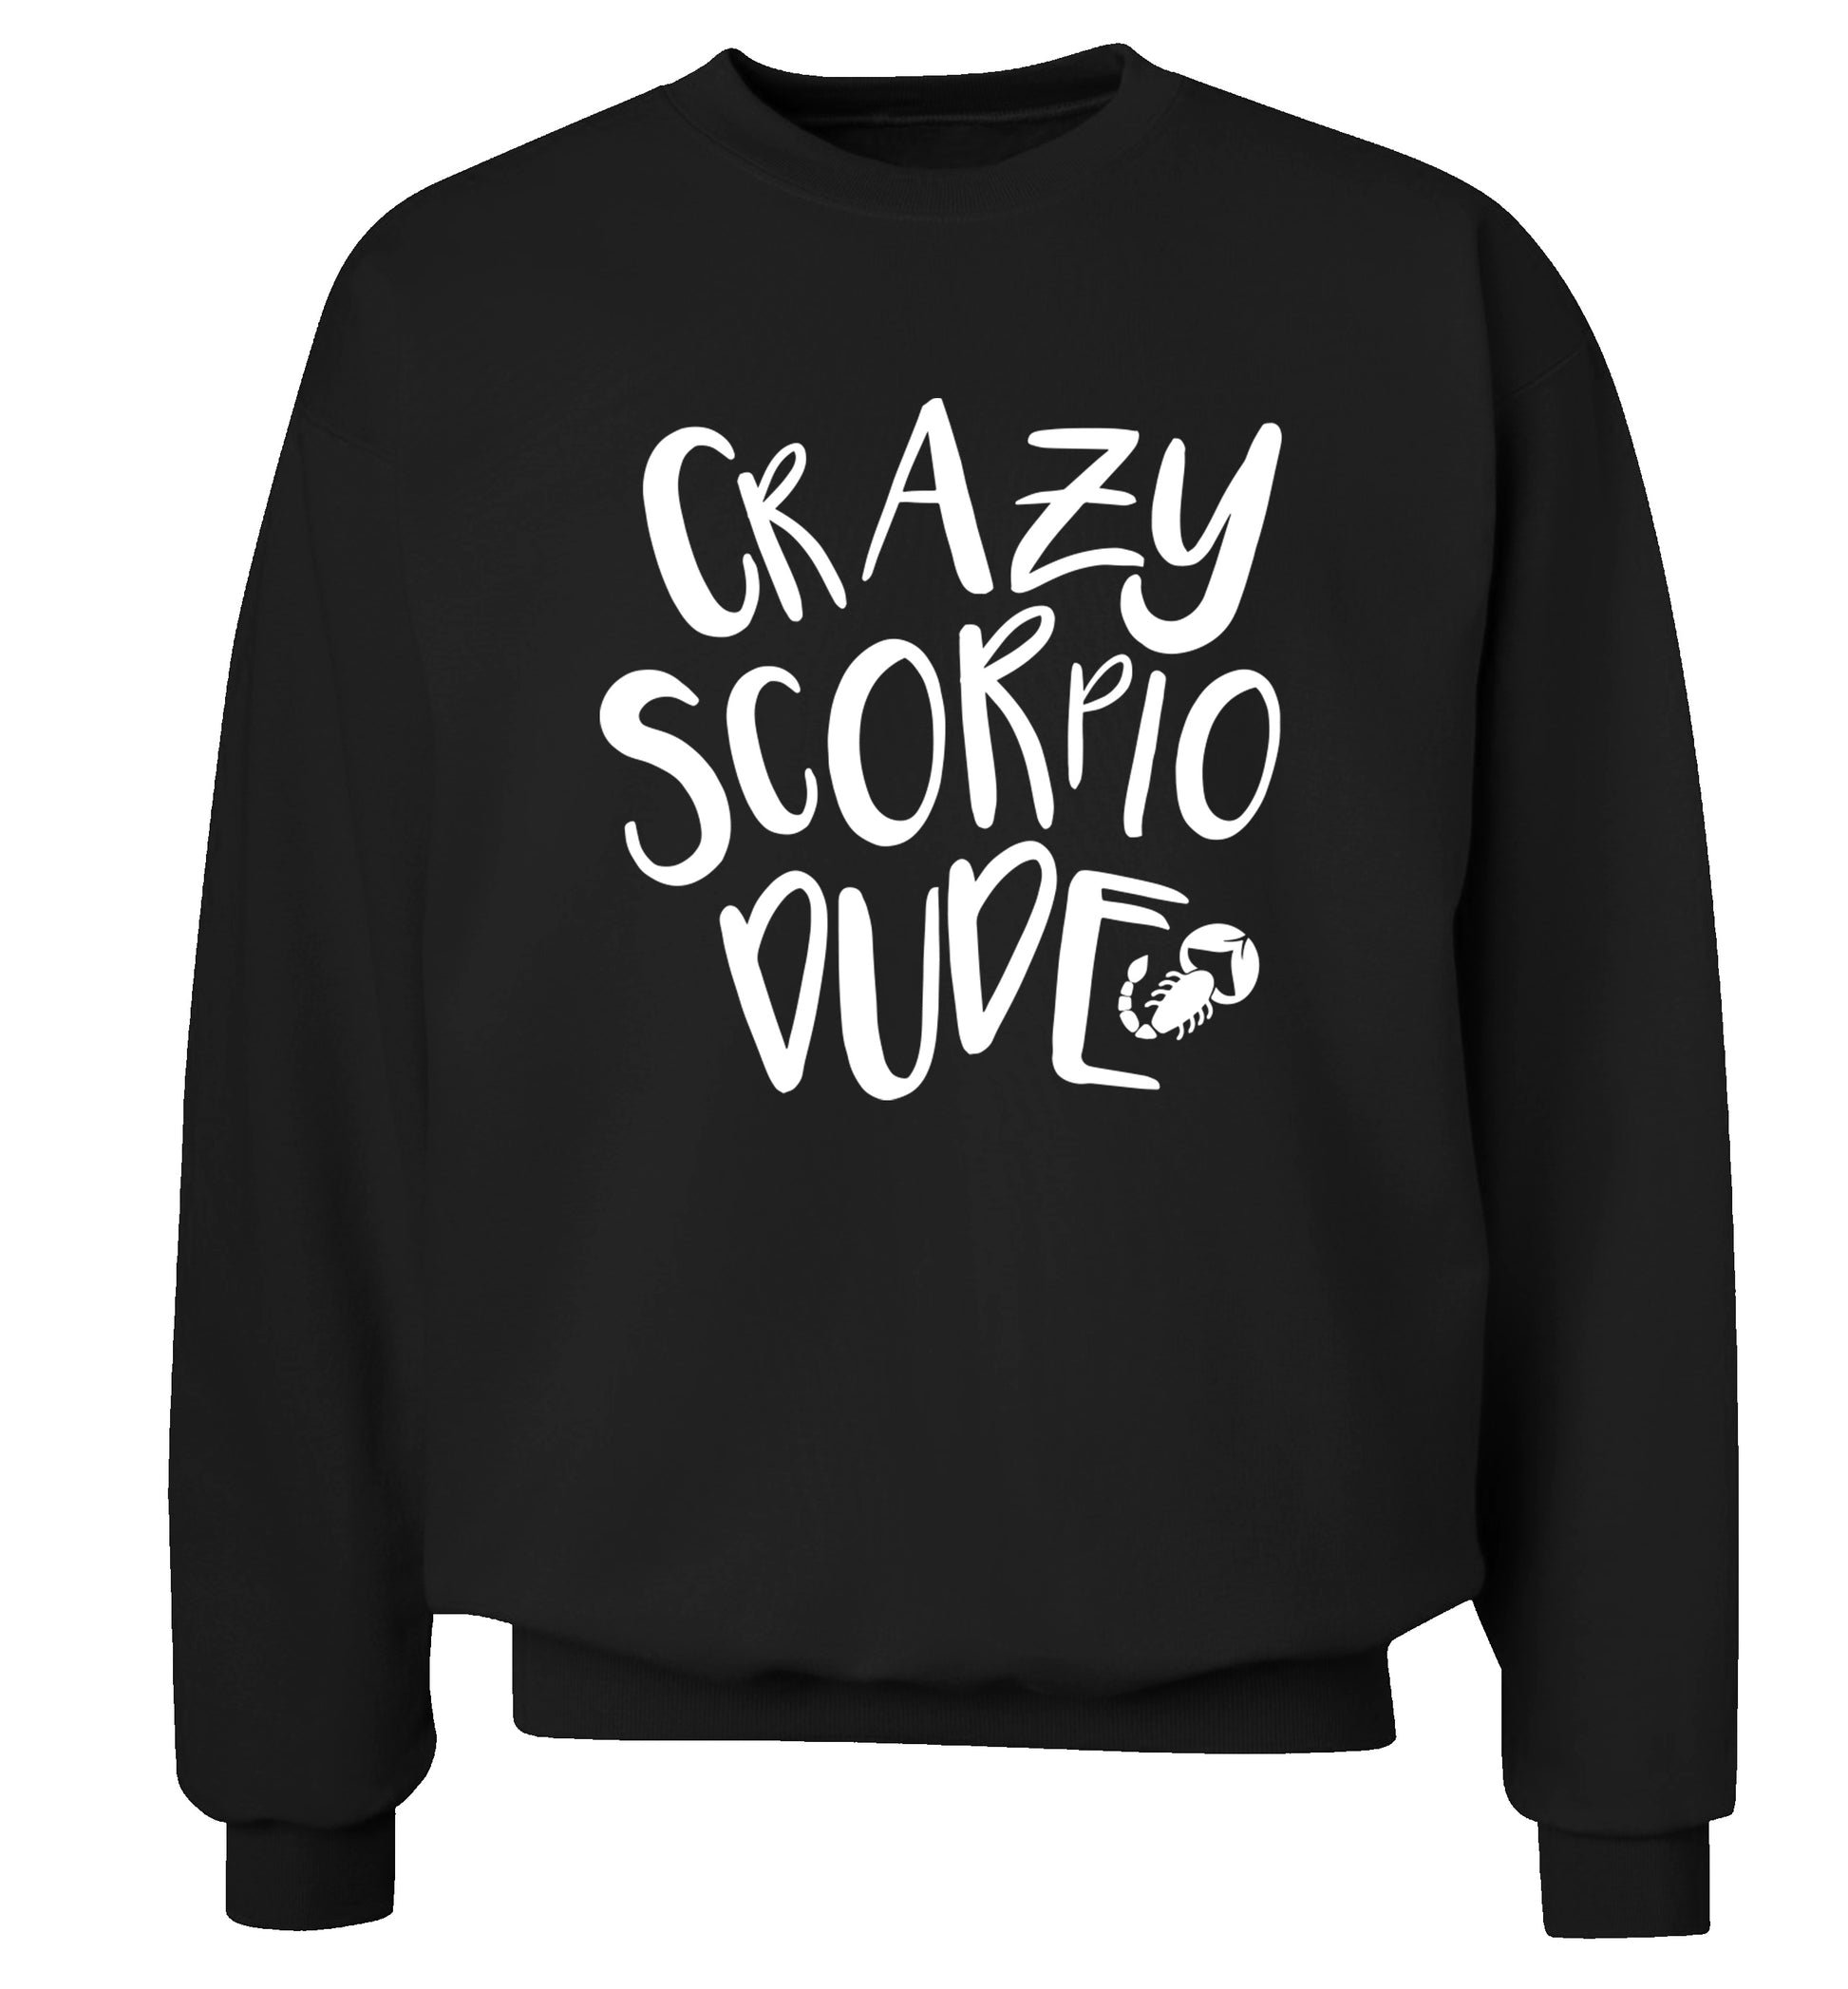 Crazy scorpio dude Adult's unisex black Sweater 2XL